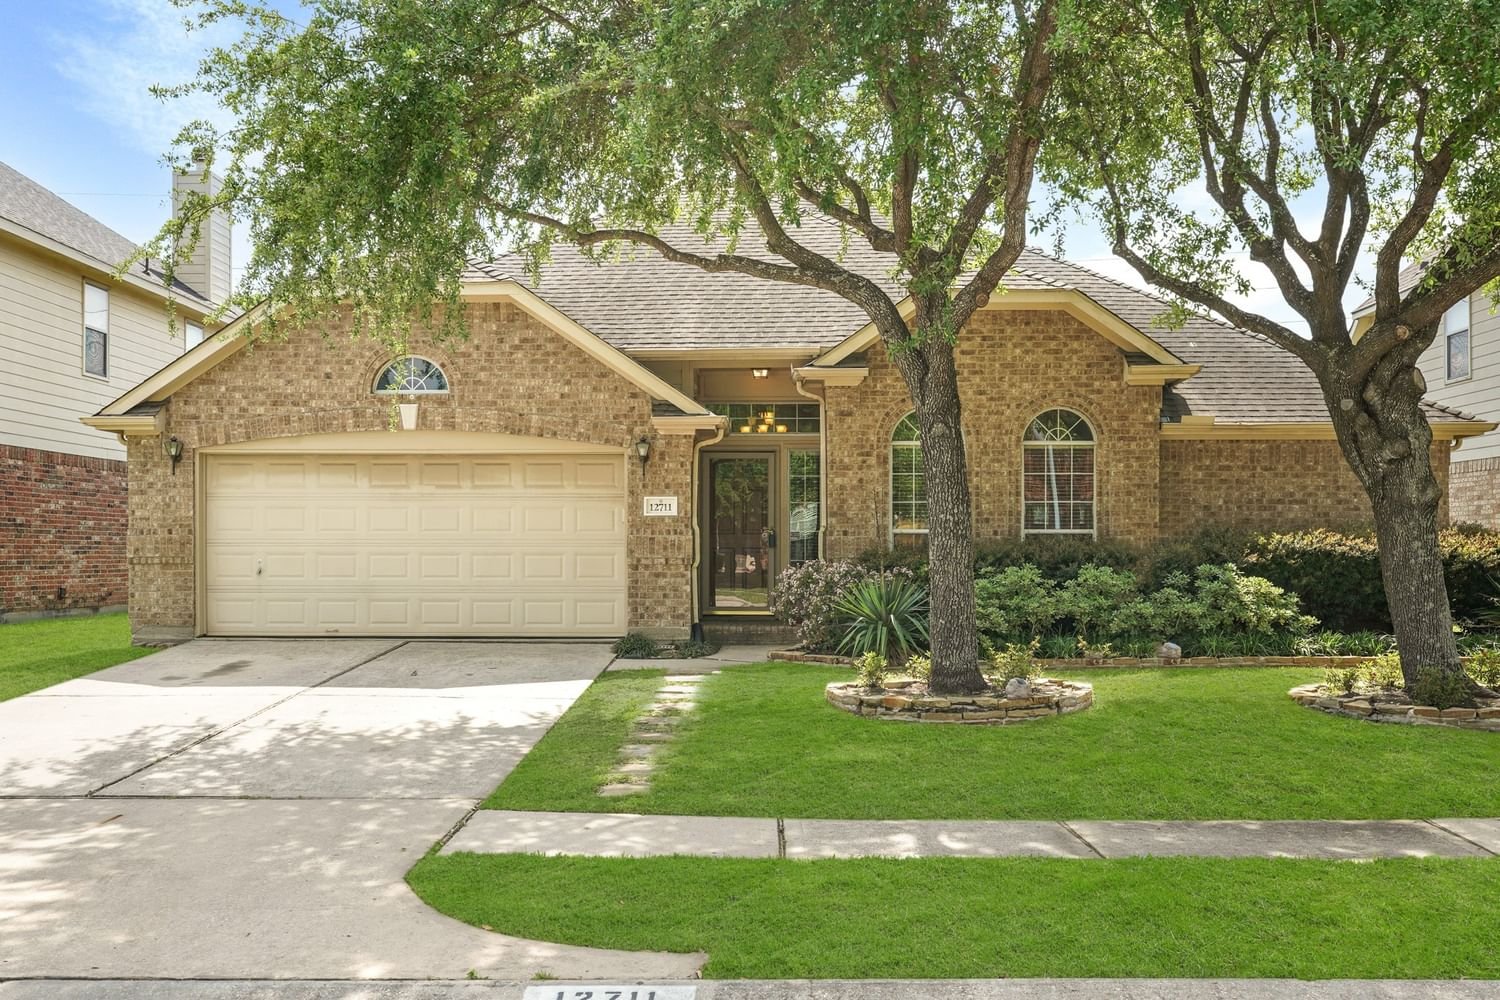 Real estate property located at 12711 Laurel Falls, Harris, Laurel Oaks, Houston, TX, US